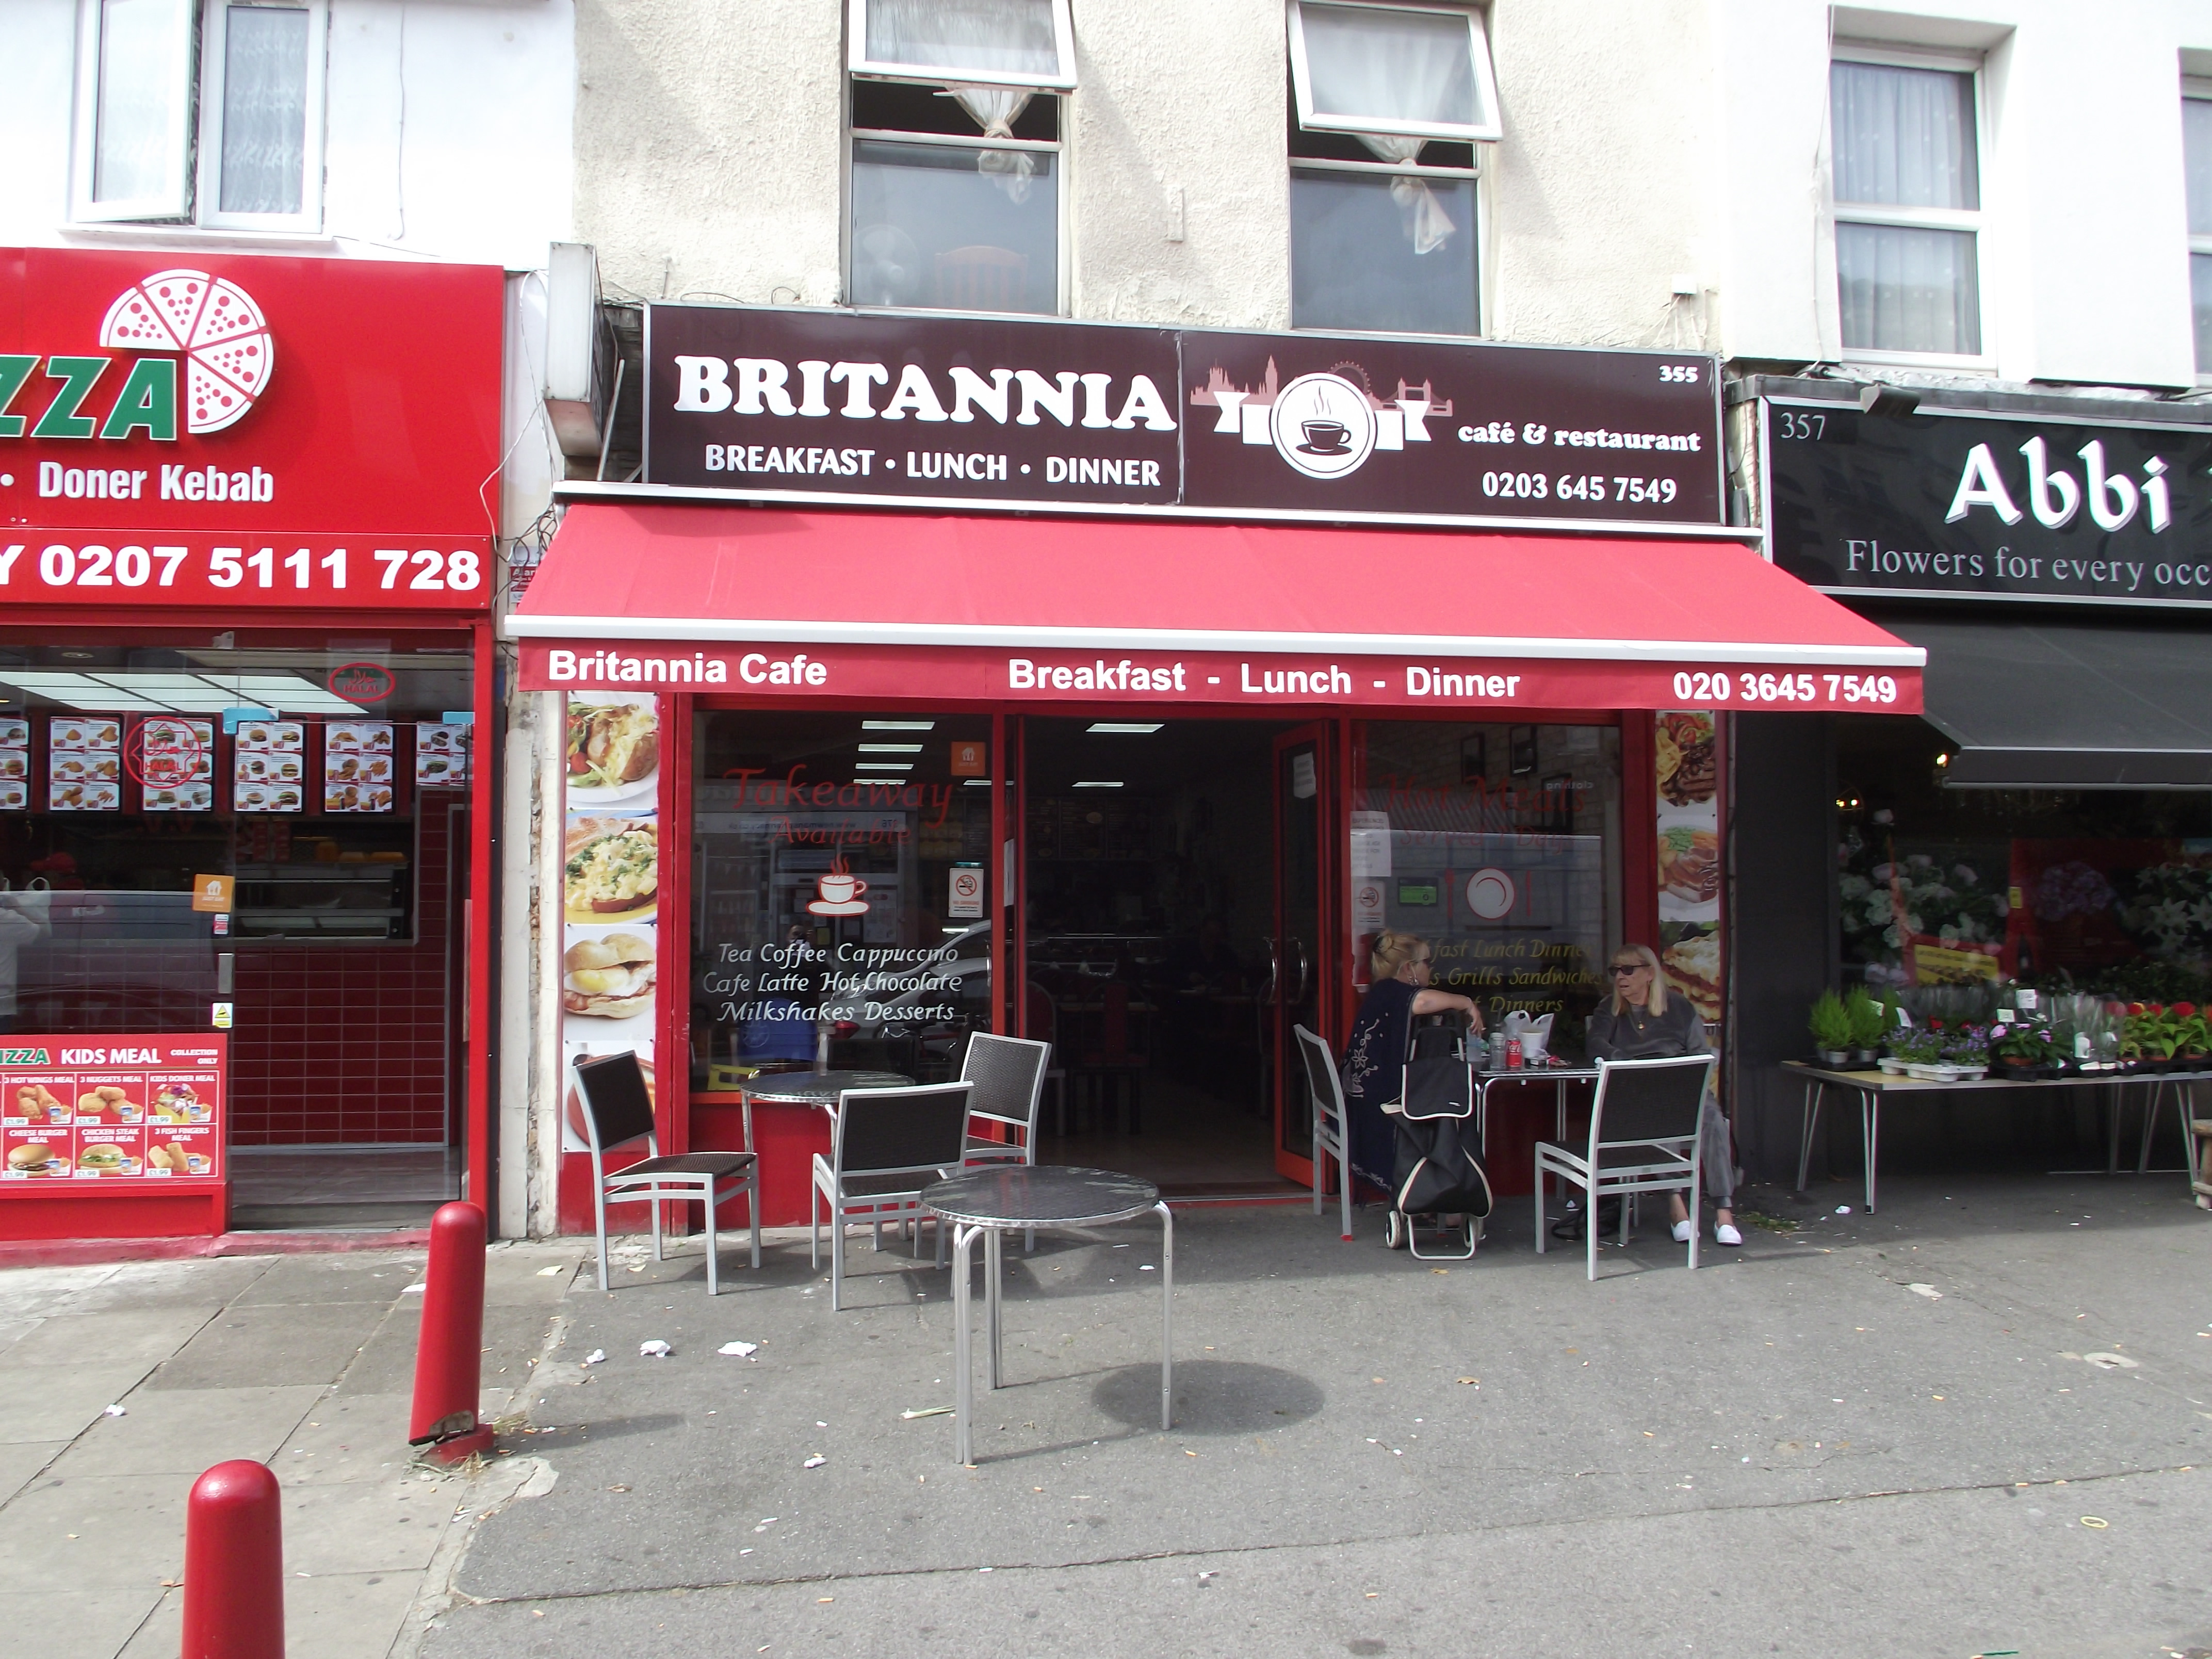 Britannia Cafe